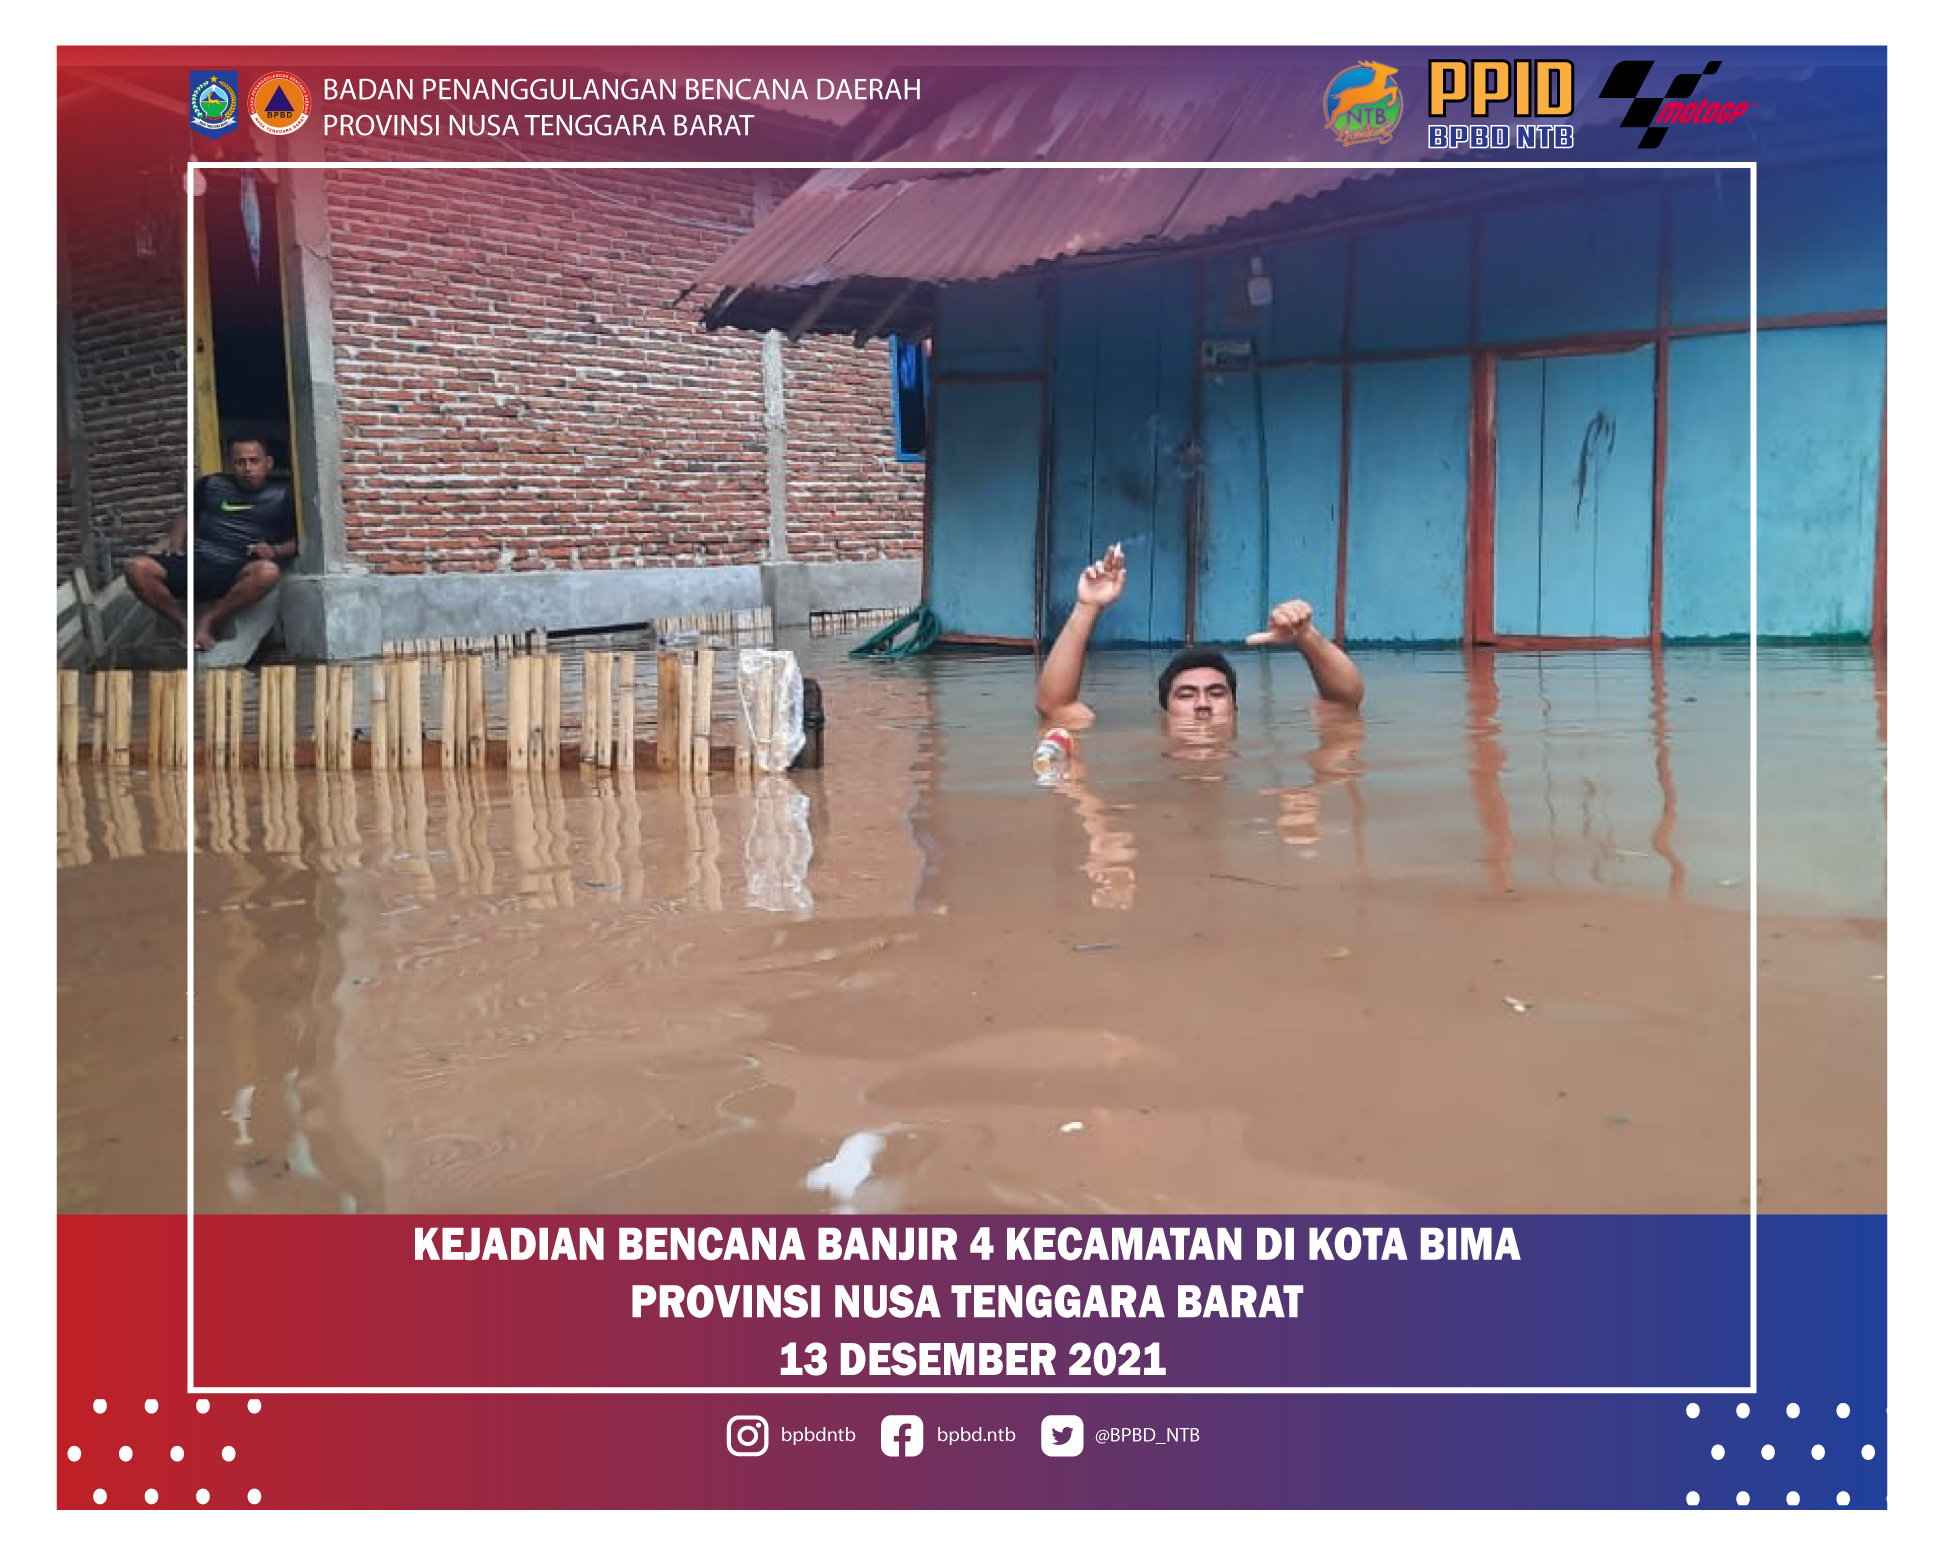 Laporan Kejadian Bencana Alam Banjir Kota Bima (Senin, 13 Desember 2021)